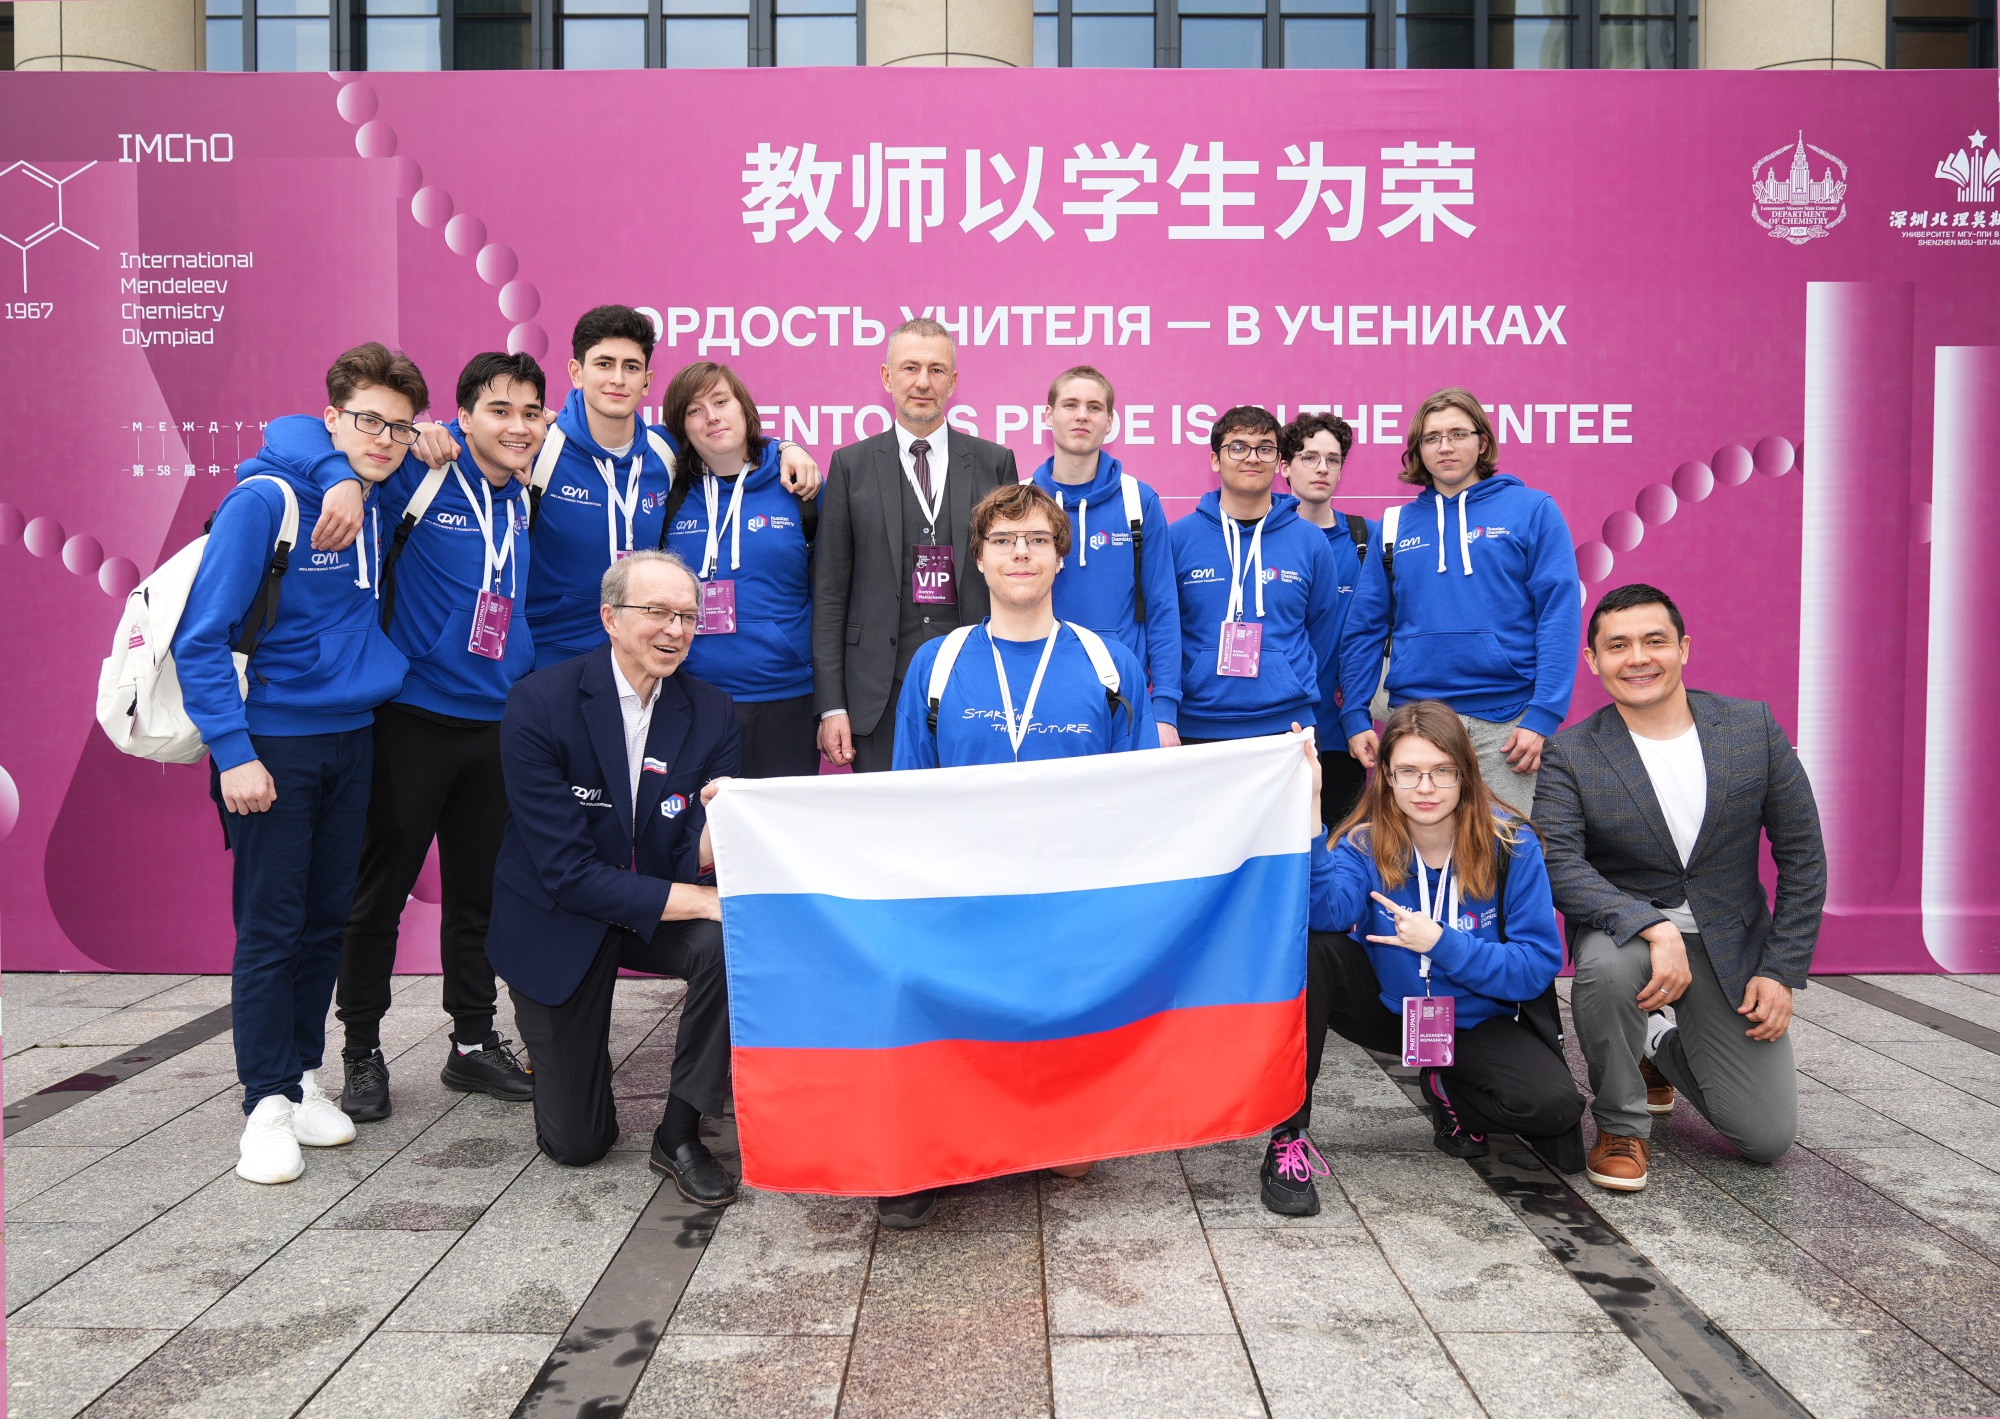 Пять золотых и пять серебряных медалей завоевали российские школьники на 58-й Международной Менделеевской олимпиаде по химии в Китае